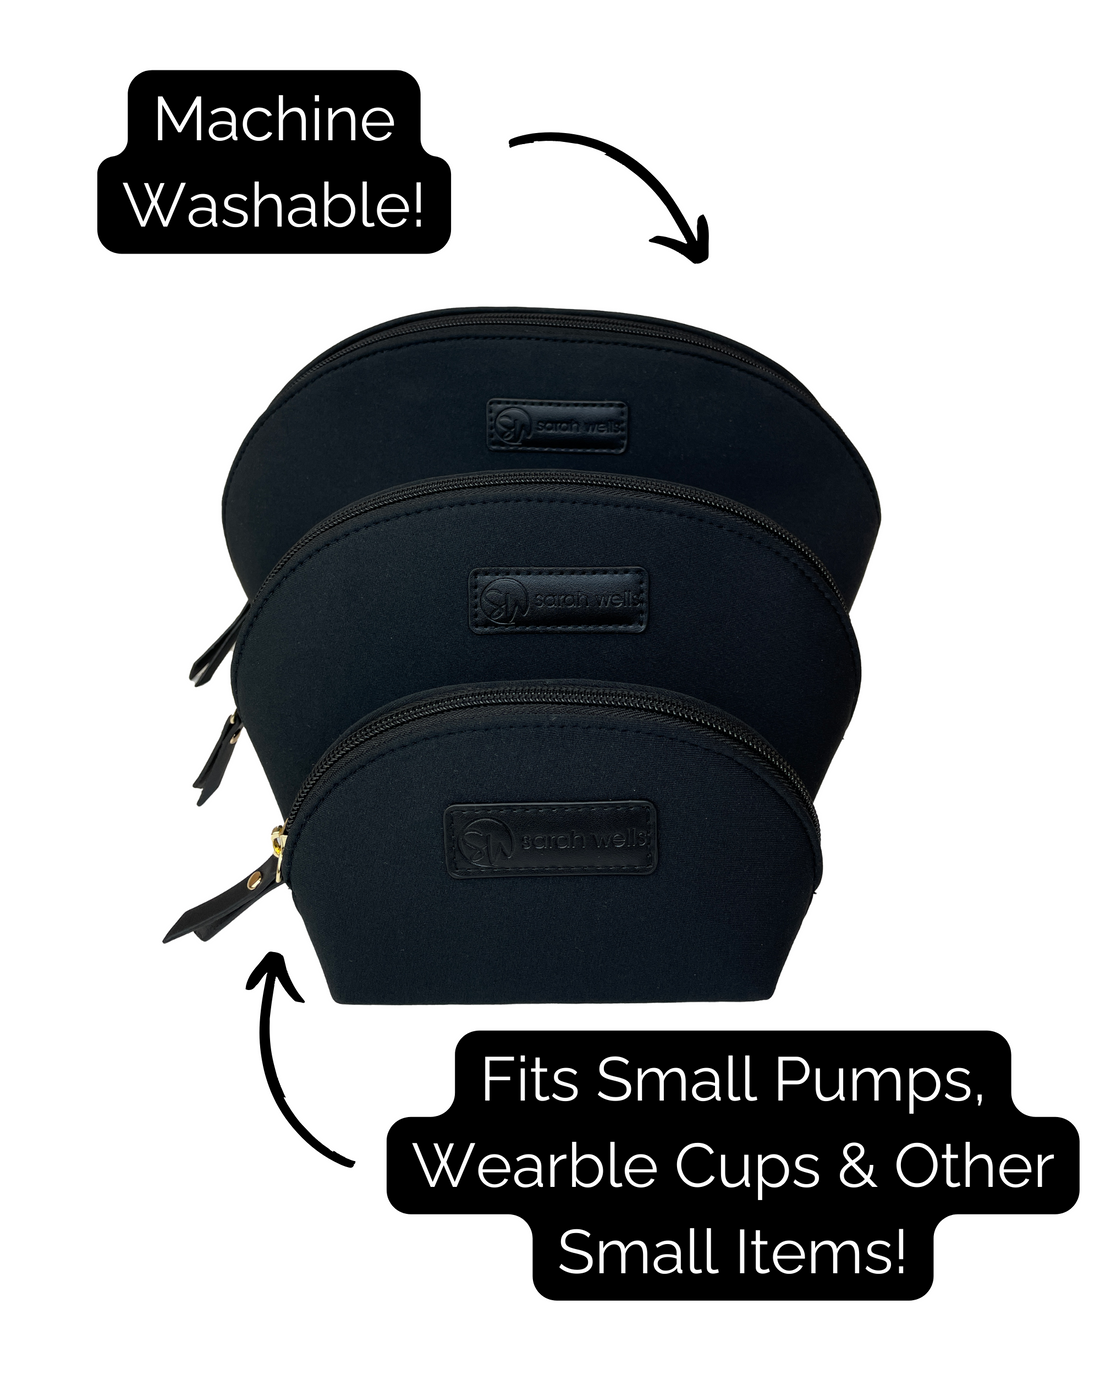 PackSWell Neoprene 3 Nesting Bags (Black)